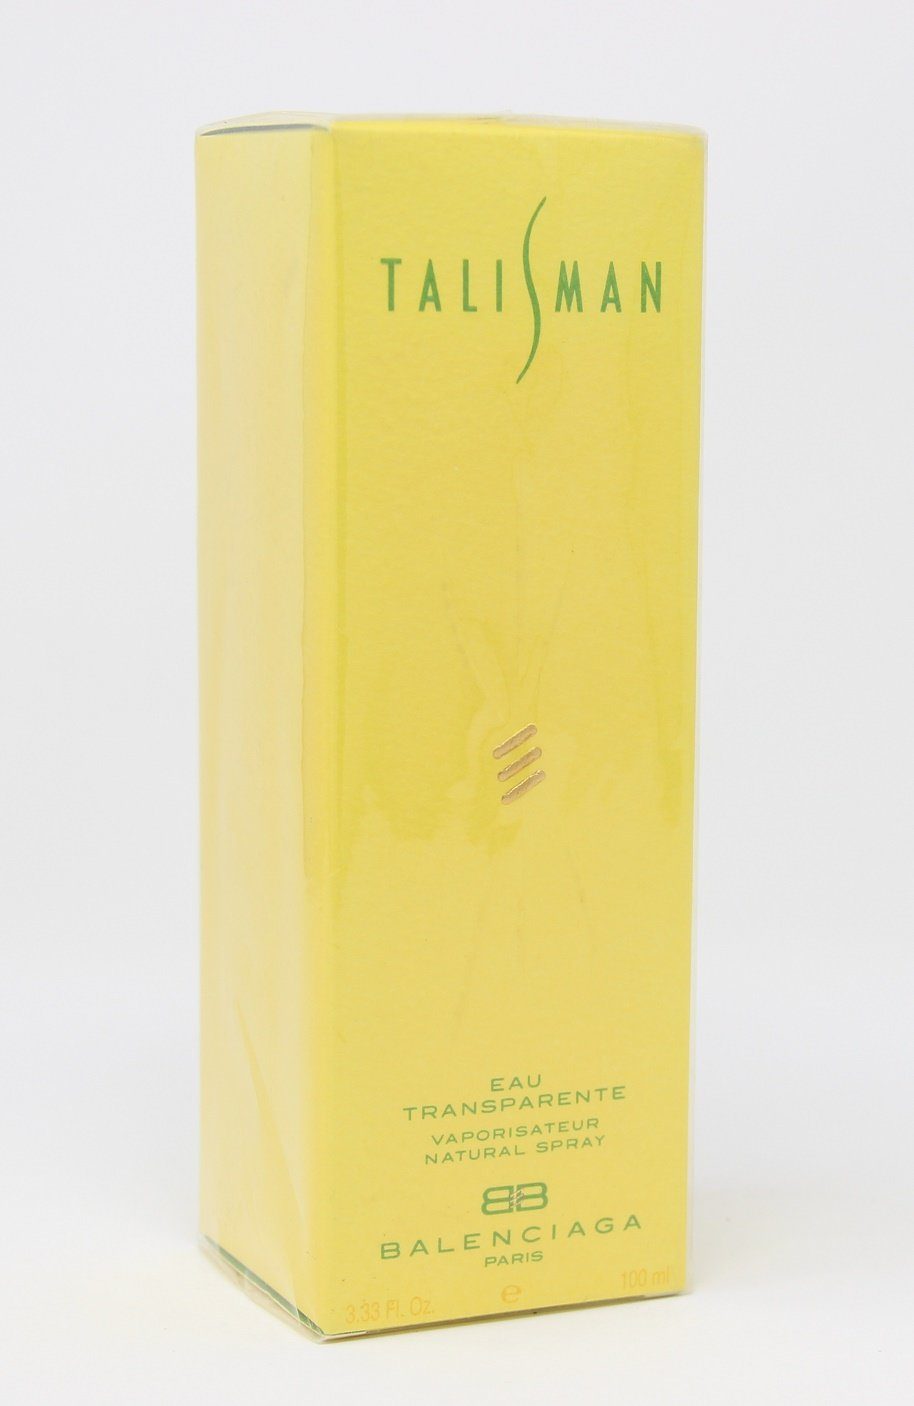 Balenciaga Eau Parfum Spray Eau Natural Transparente Talisman de 100ml Balenciaga